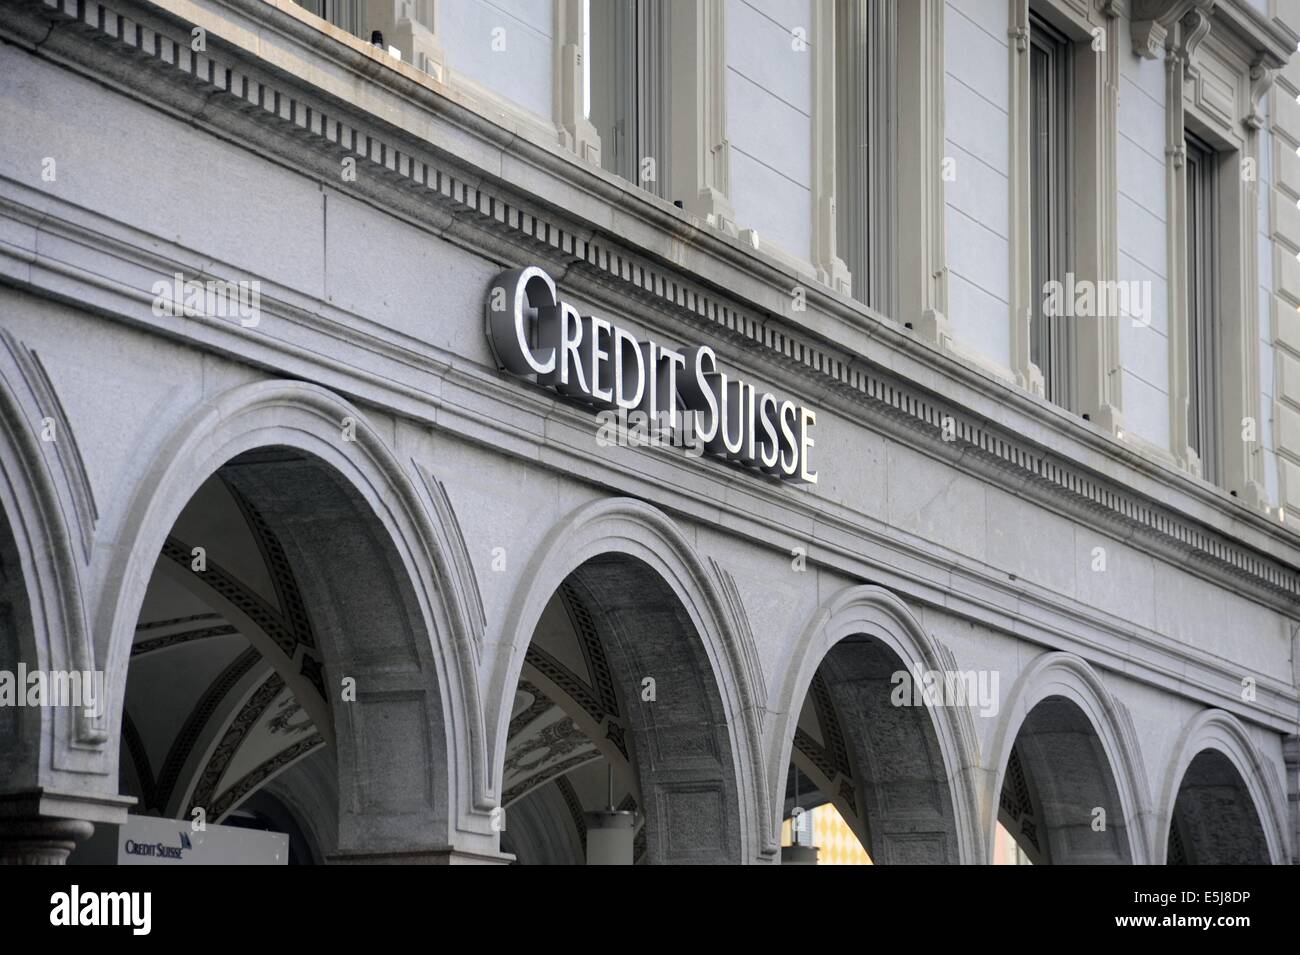 Bancos en Lugano, Suiza, sede del banco Credit Suisse. Foto de stock